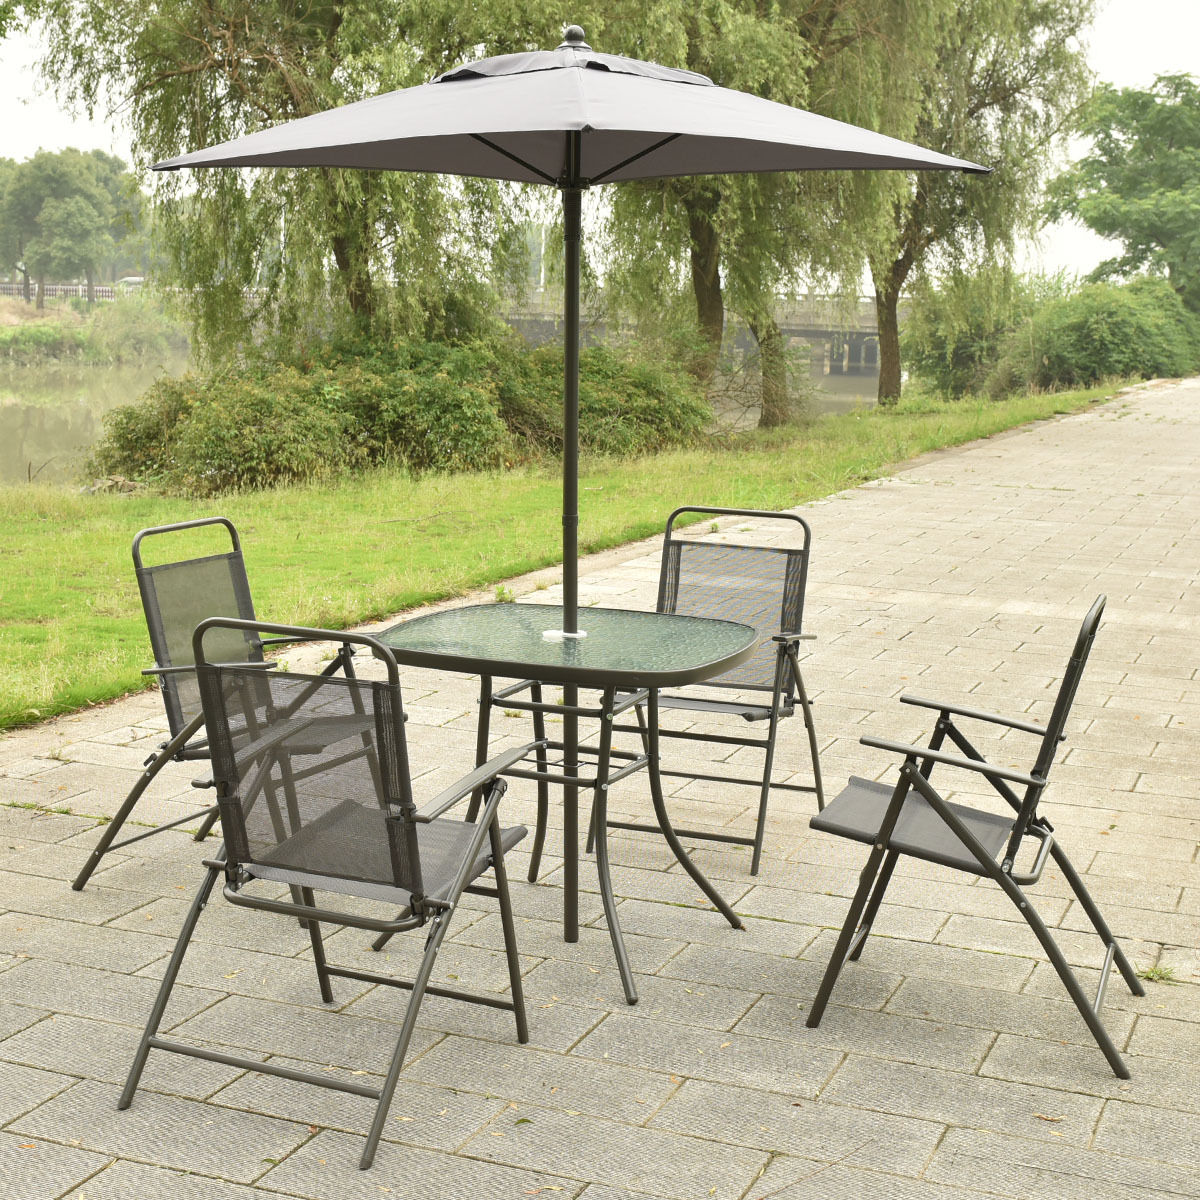 6 Pcs Patio Folding Furniture Set With An Umbrella Outdoor